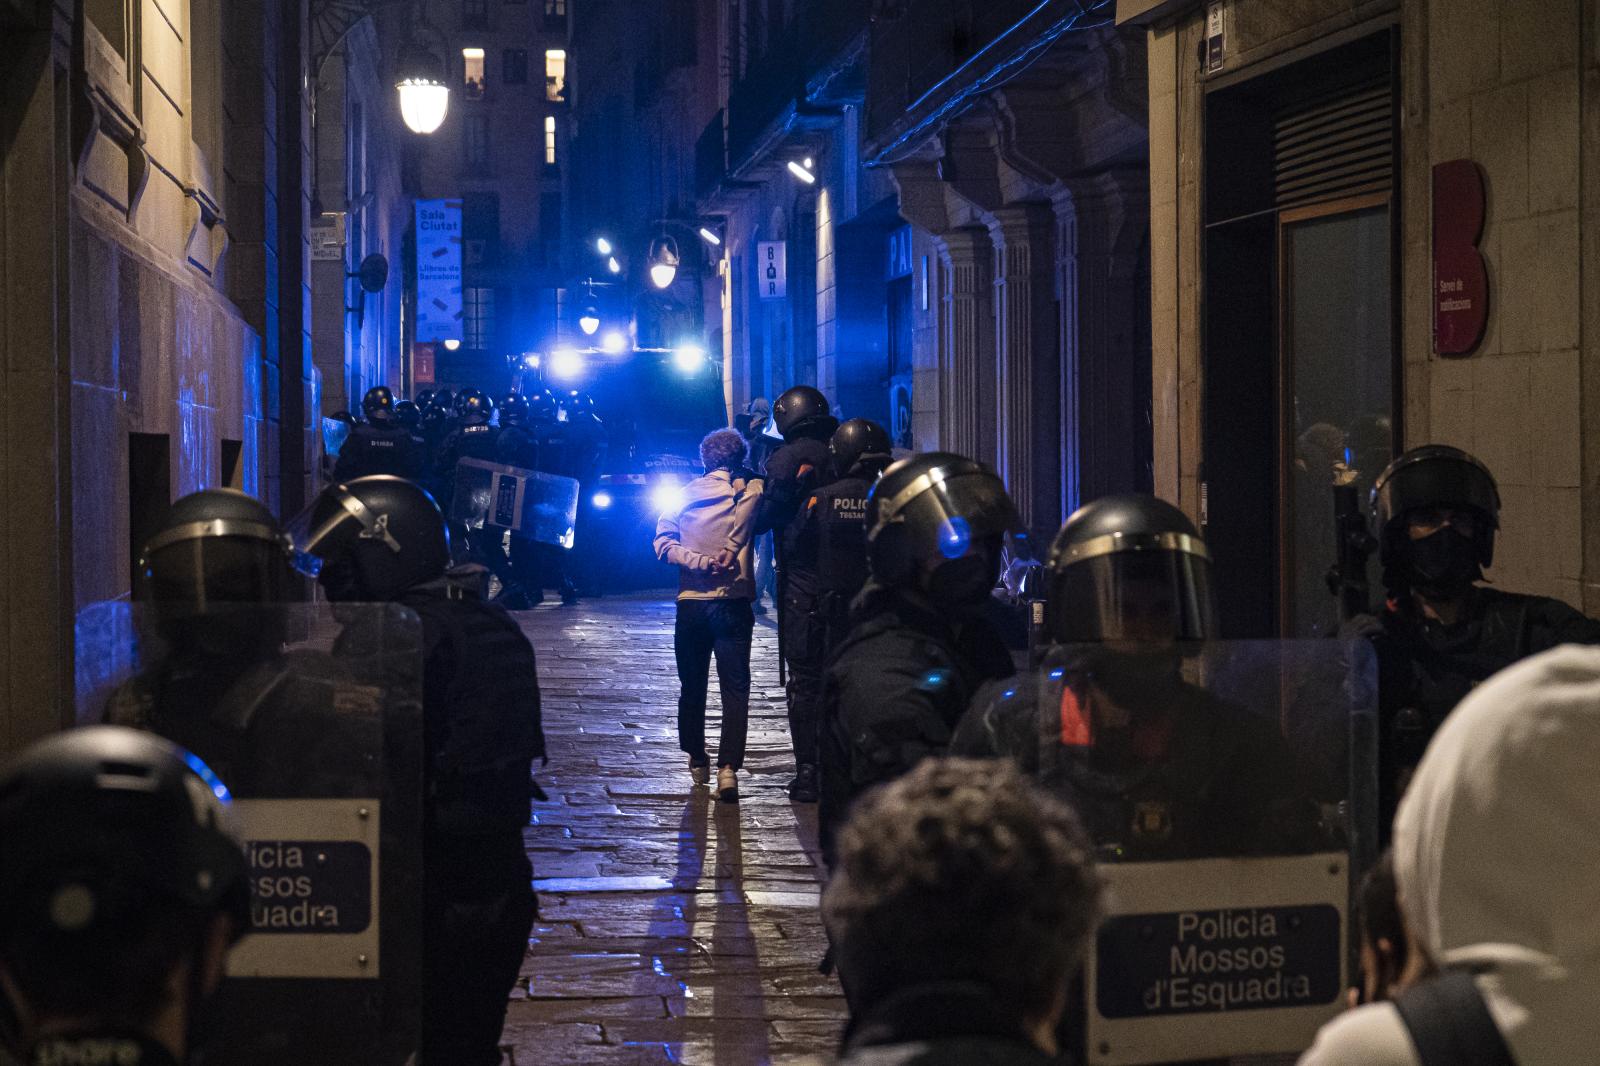 DAILY NEWS - Mossos de Esquadra arrest a demonstrator in Barcelona...